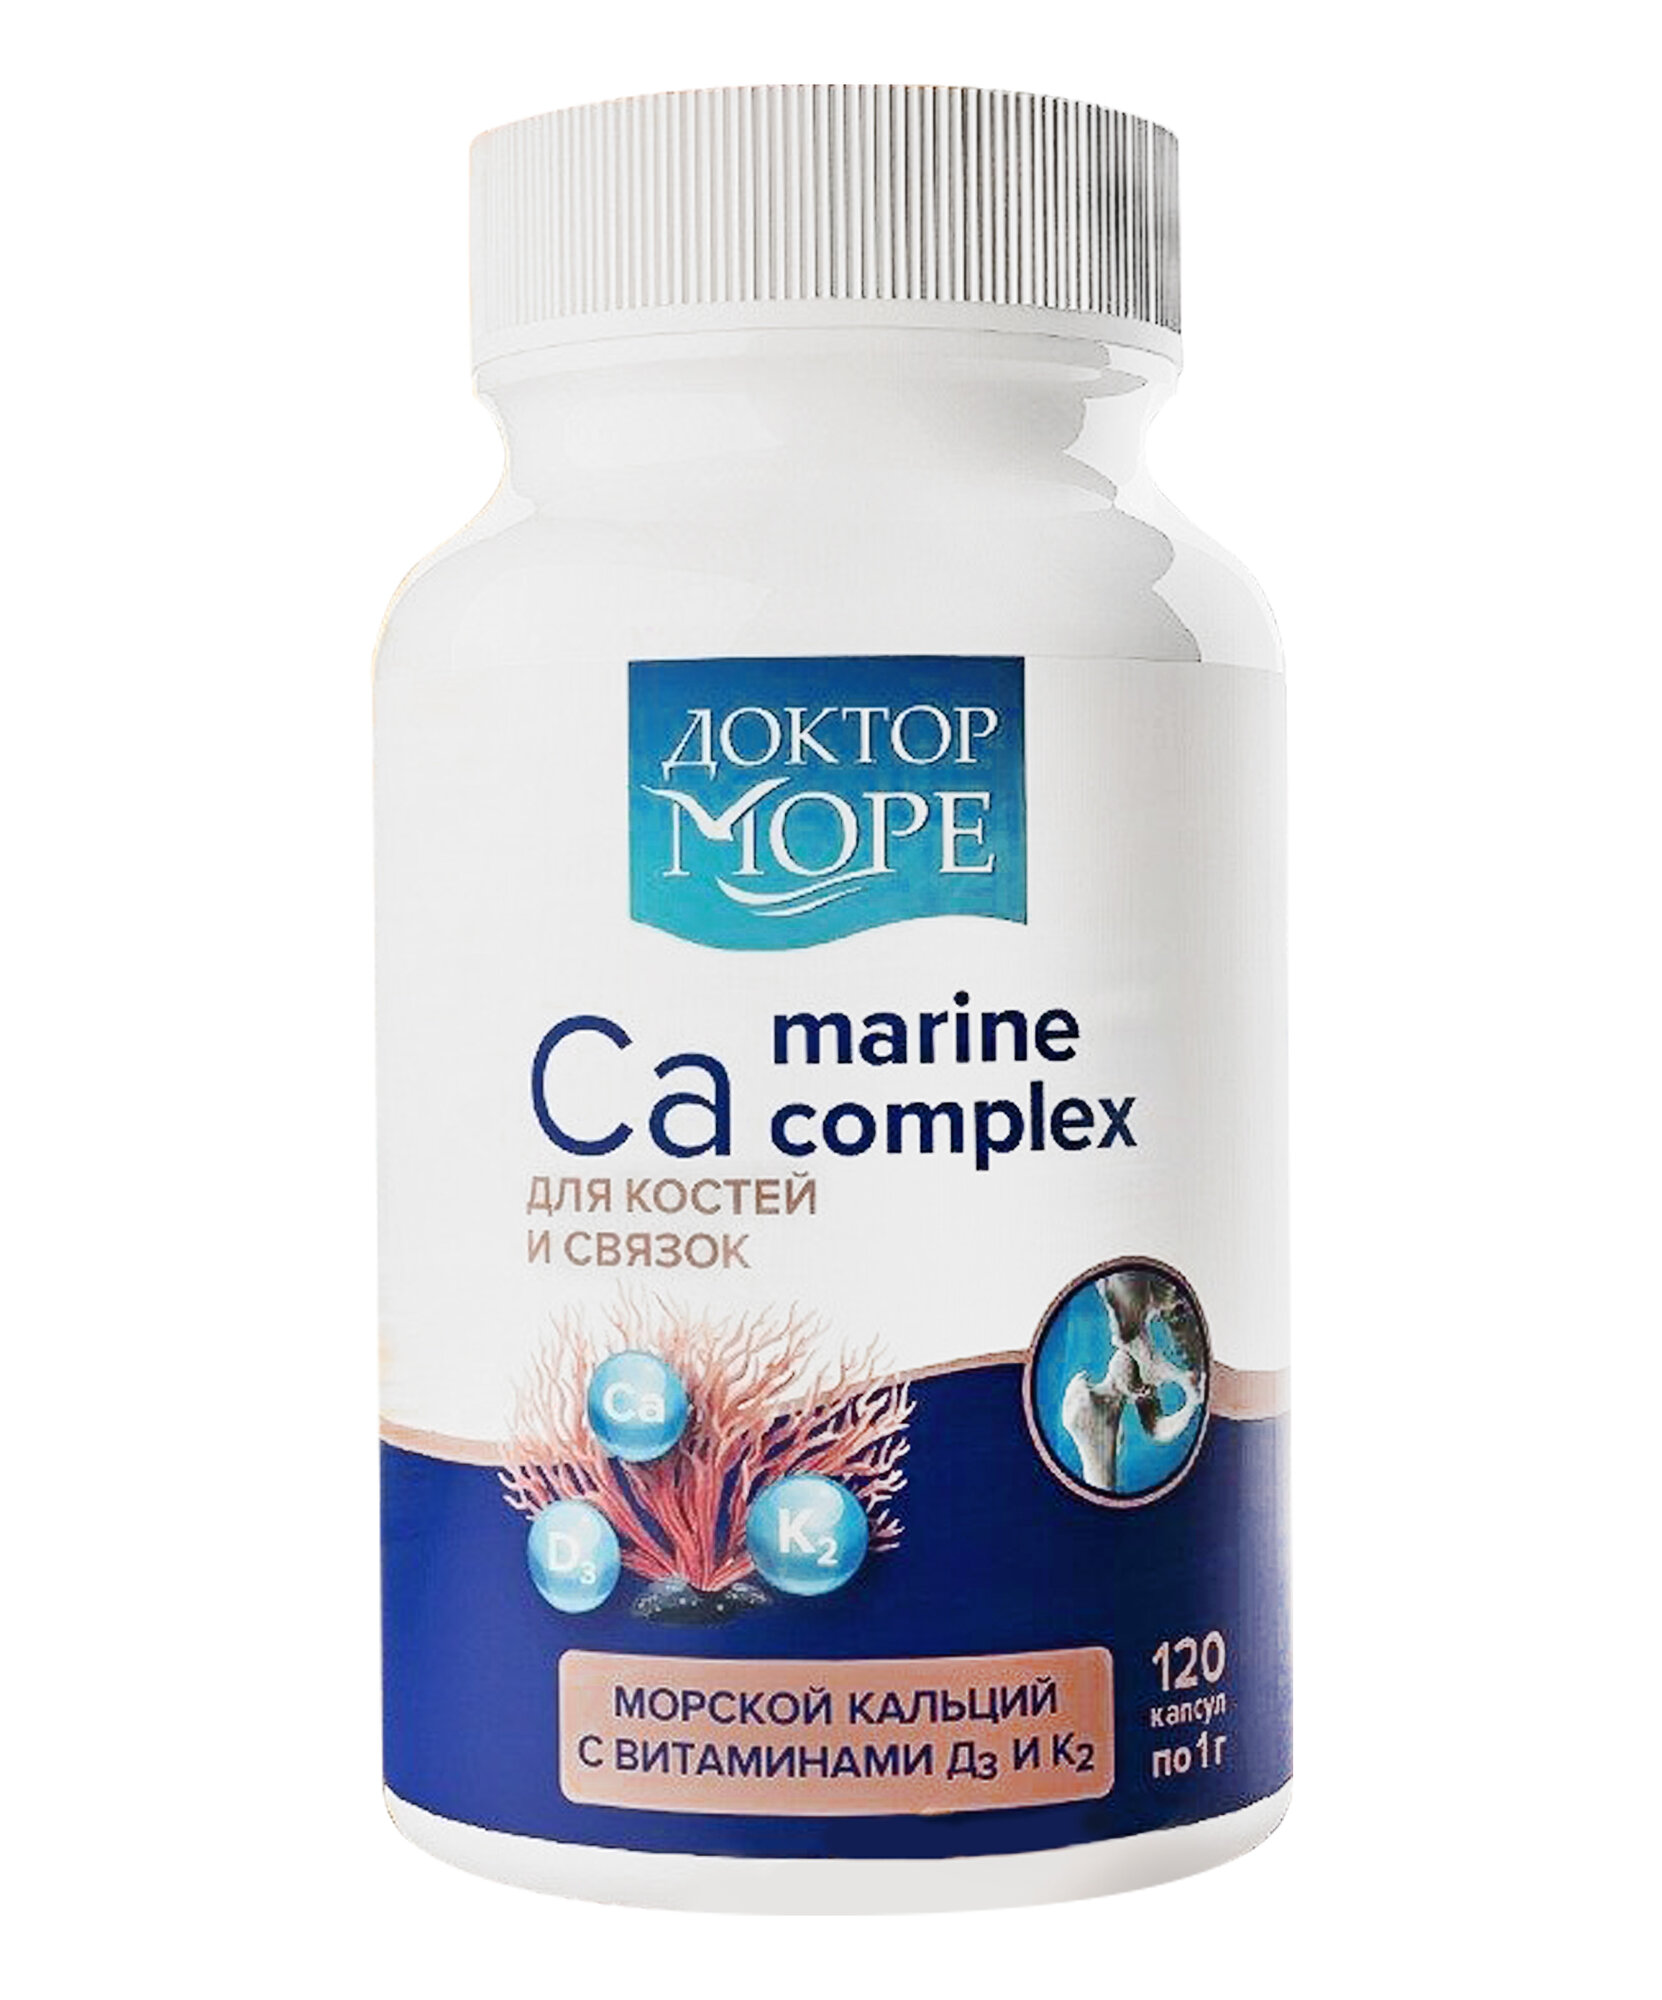 Морской кальций с витаминами D3 + K2 для крепких костей и гибких связок, 120 кап.